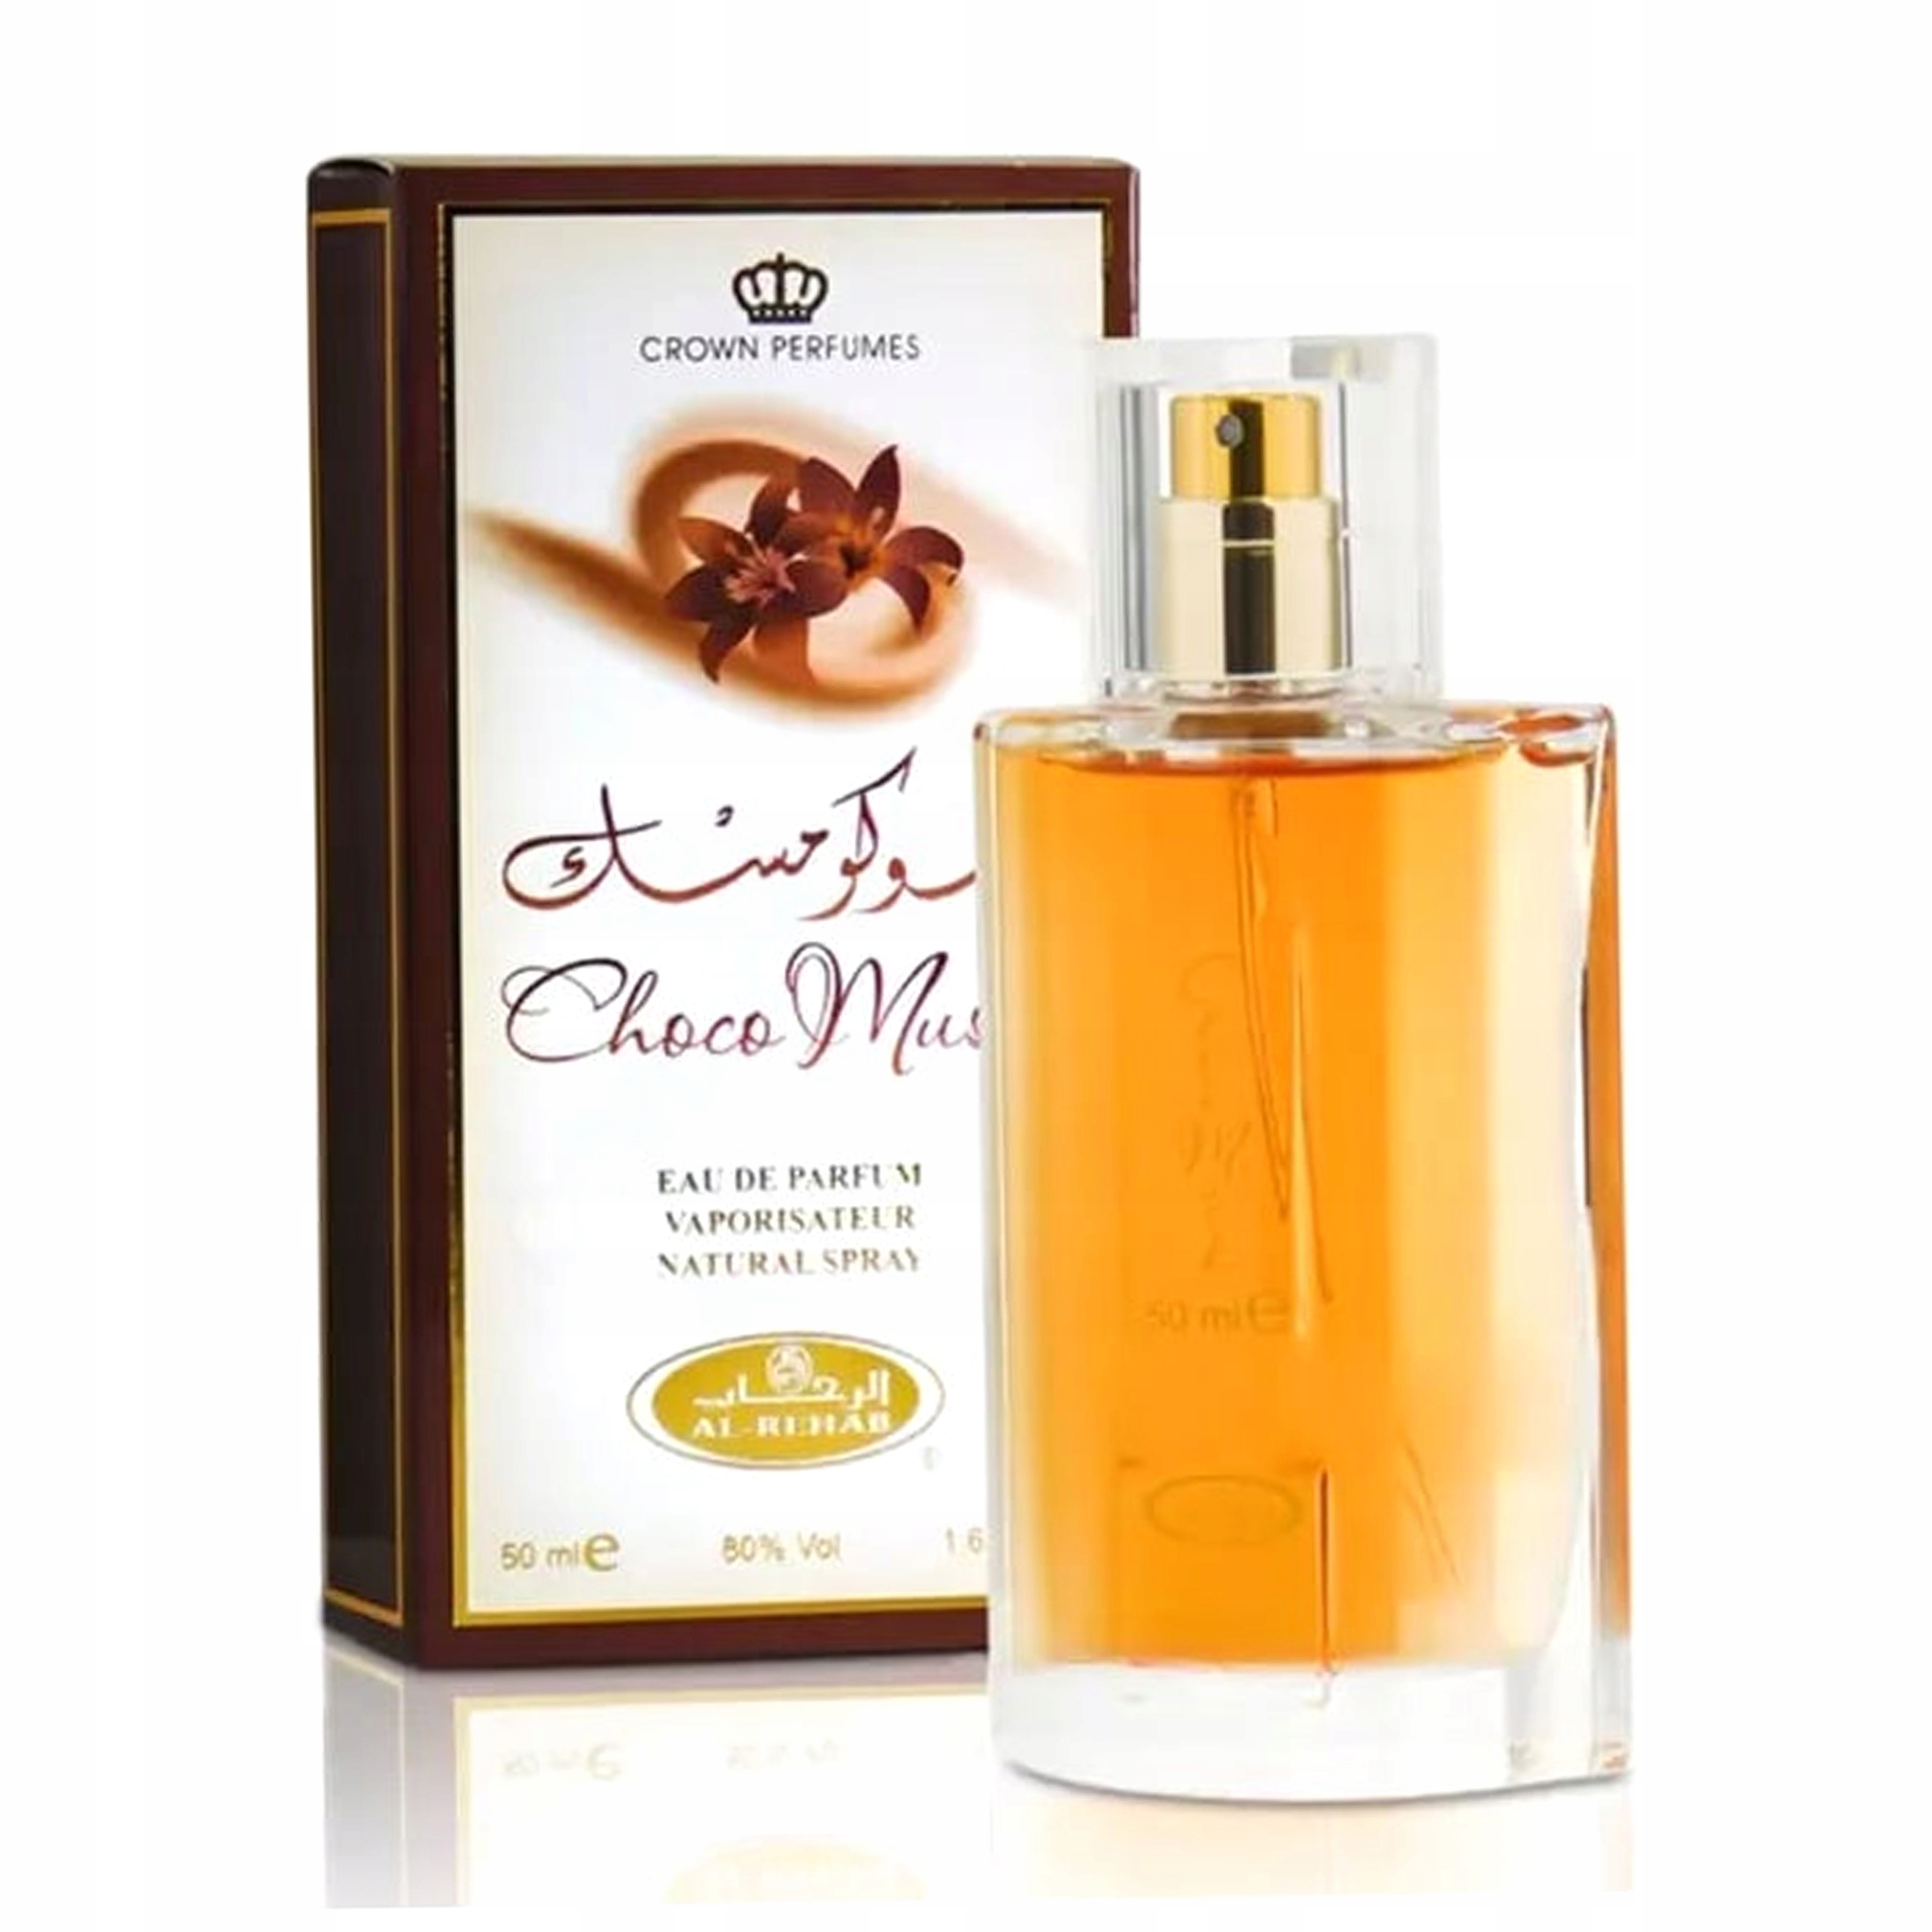 DÁMSKY PARFUM AL-REHAB CHOCO MUSK 50 ML KRÁSNY + 2 vzorky parfémov zdarma